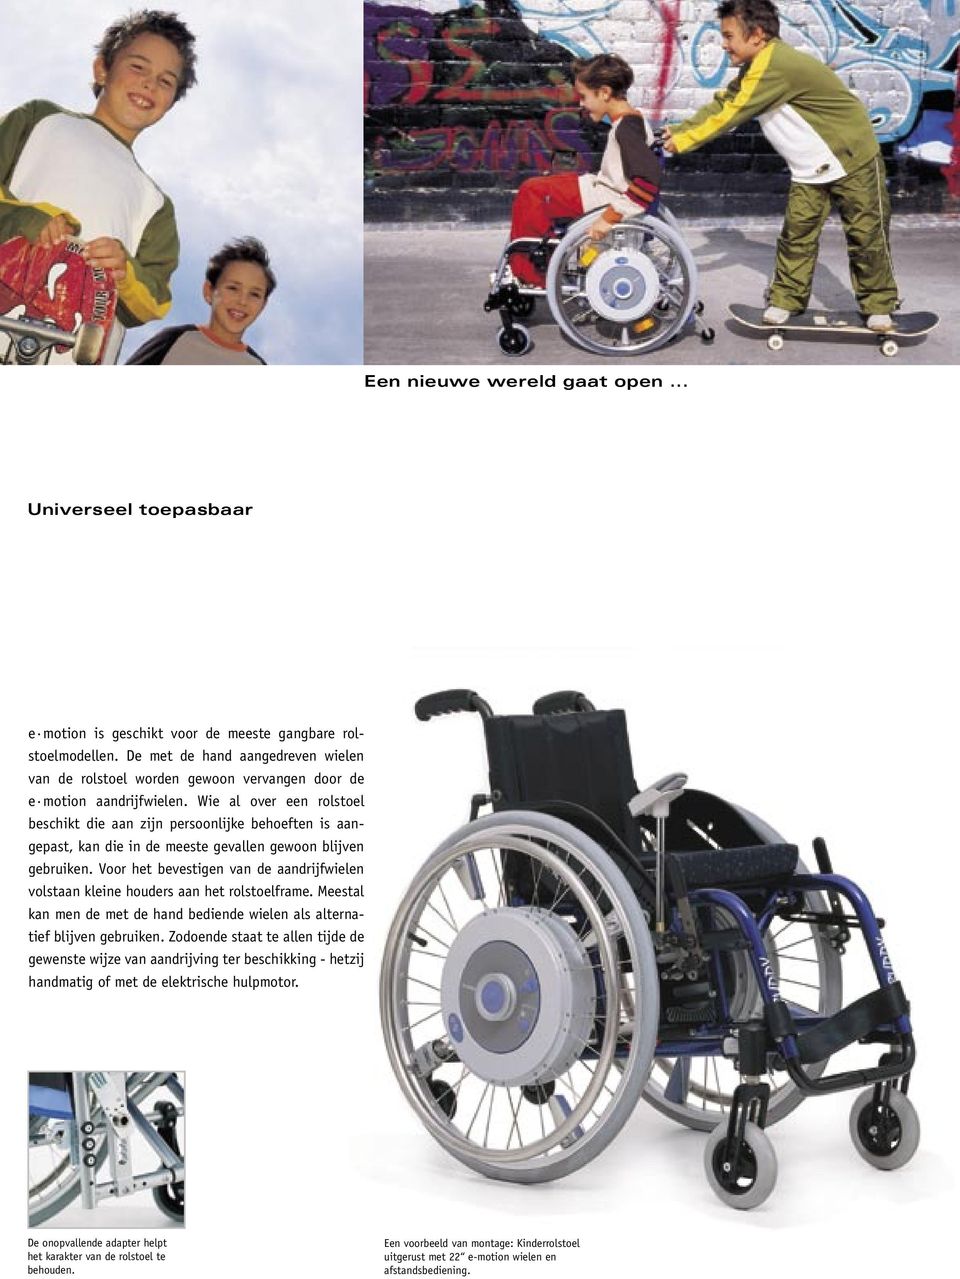 Wie al over een rolstoel beschikt die aan zijn persoonlijke behoeften is aangepast, kan die in de meeste gevallen gewoon blijven gebruiken.